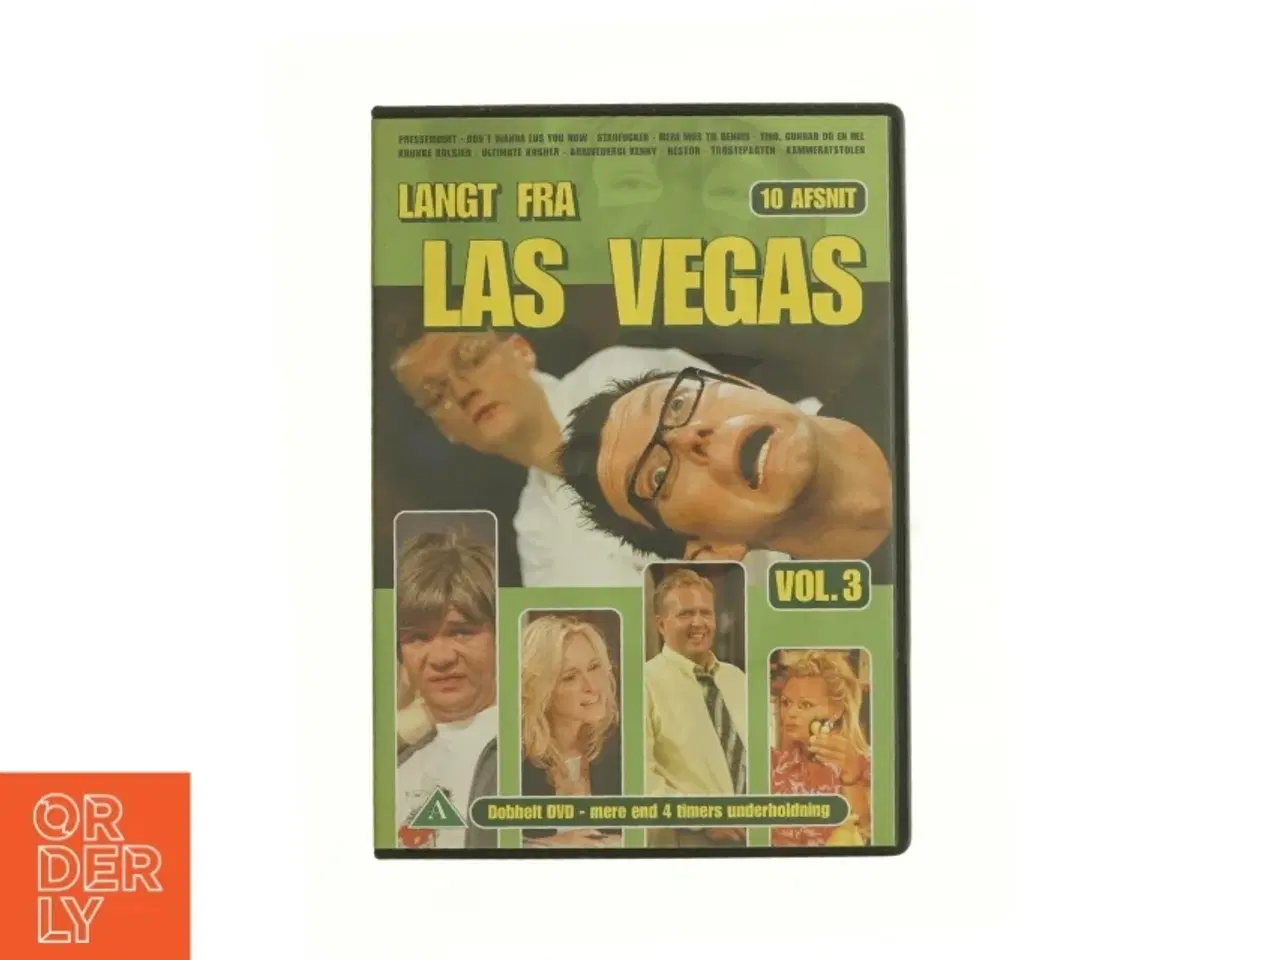 Billede 1 - Langt Fra Las Vegas - Vol. 3 fra DVD